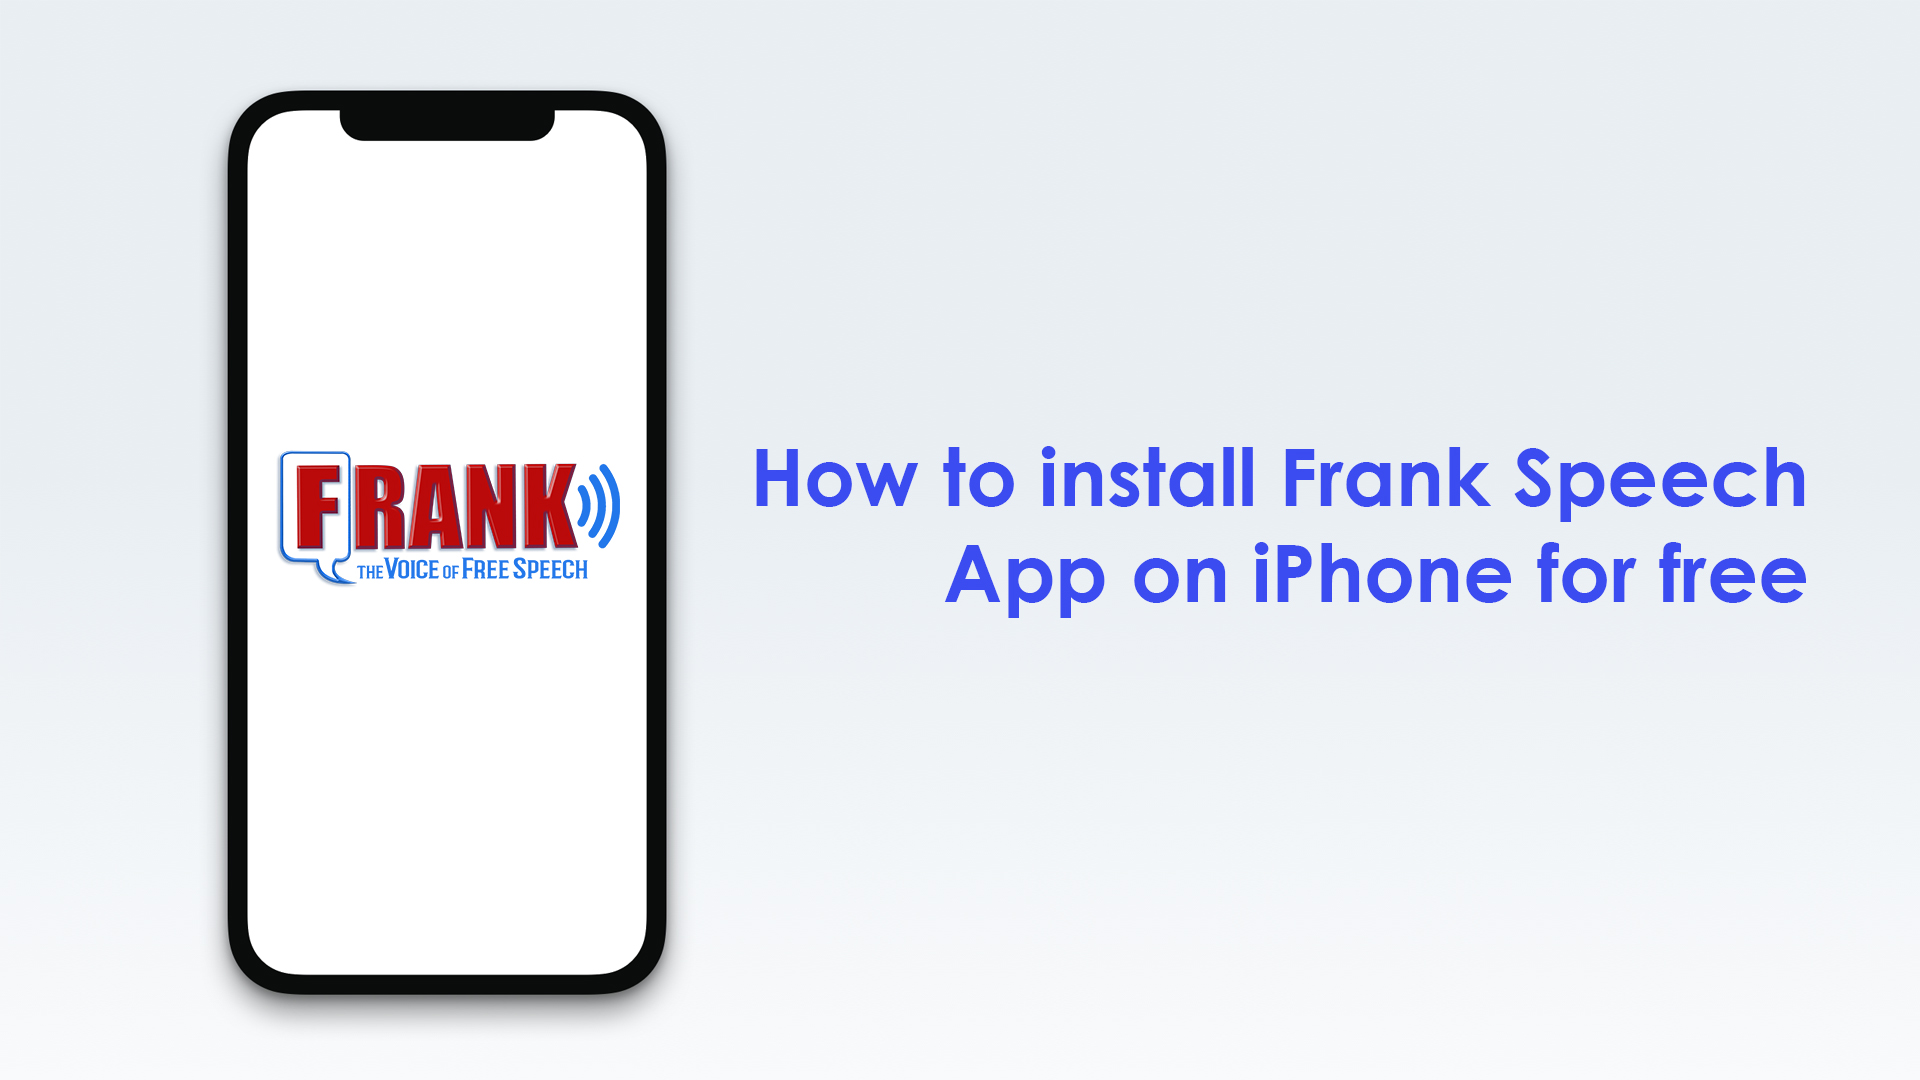 Frank speech app on iPhone